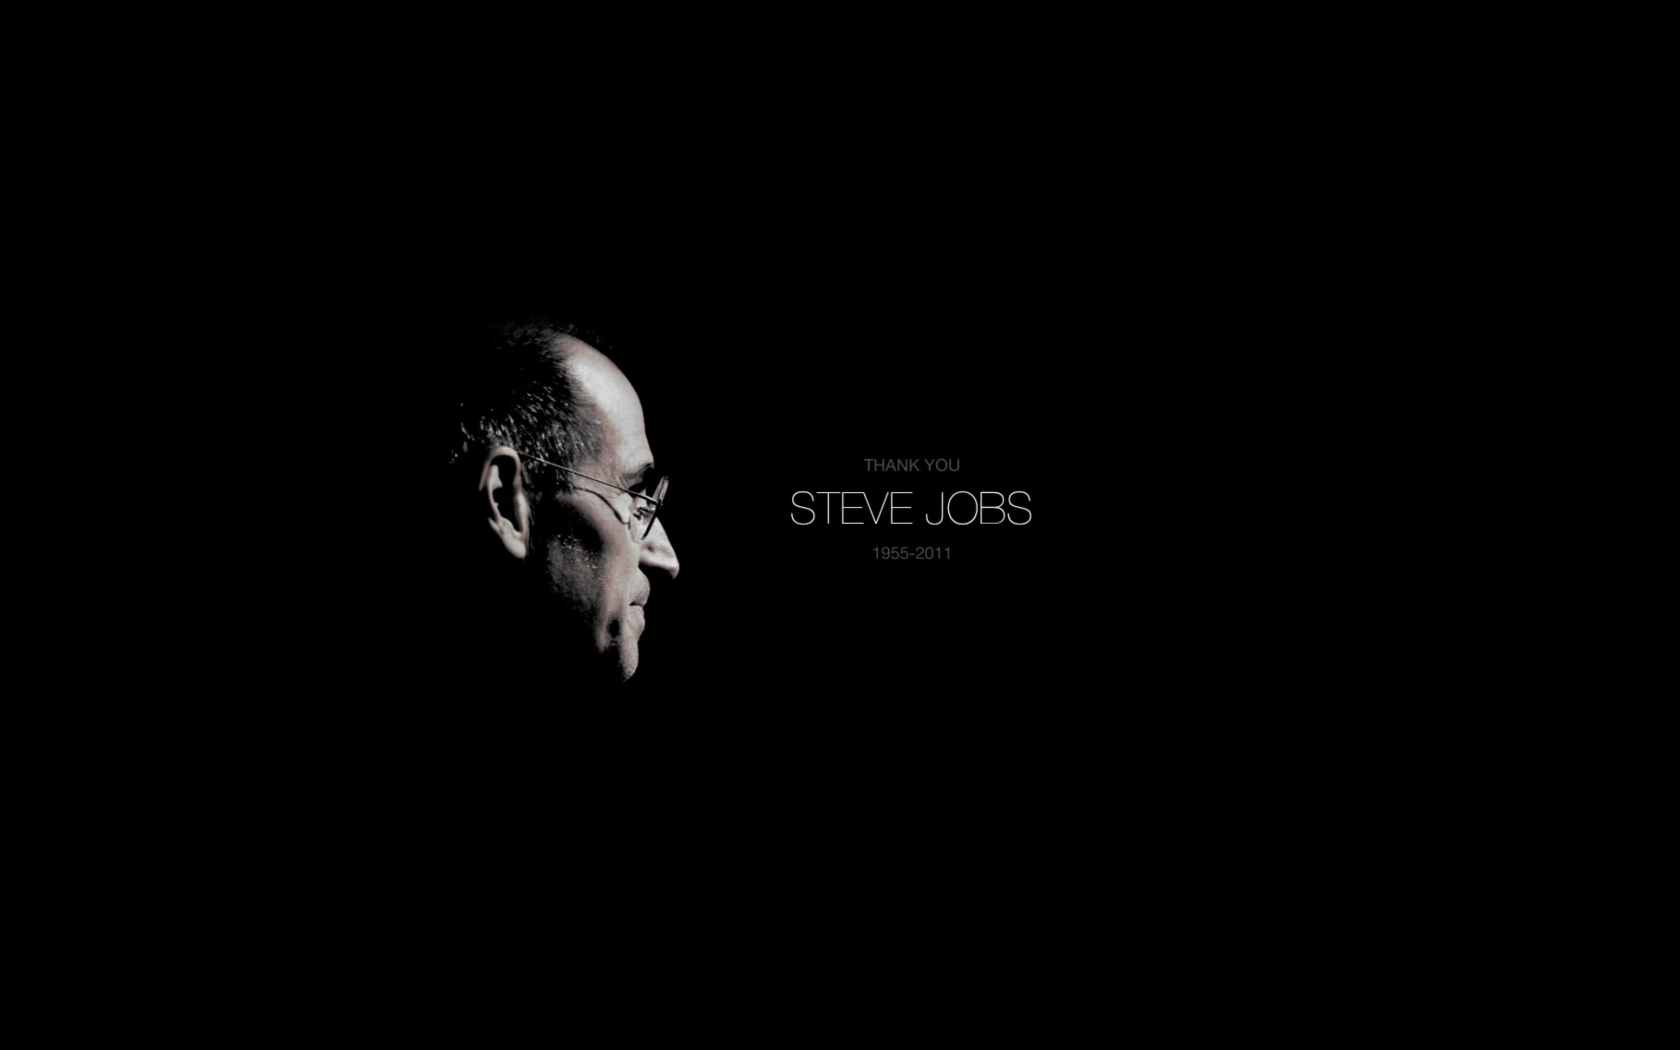 Thank you Steve Jobs wallpaper 1680x1050